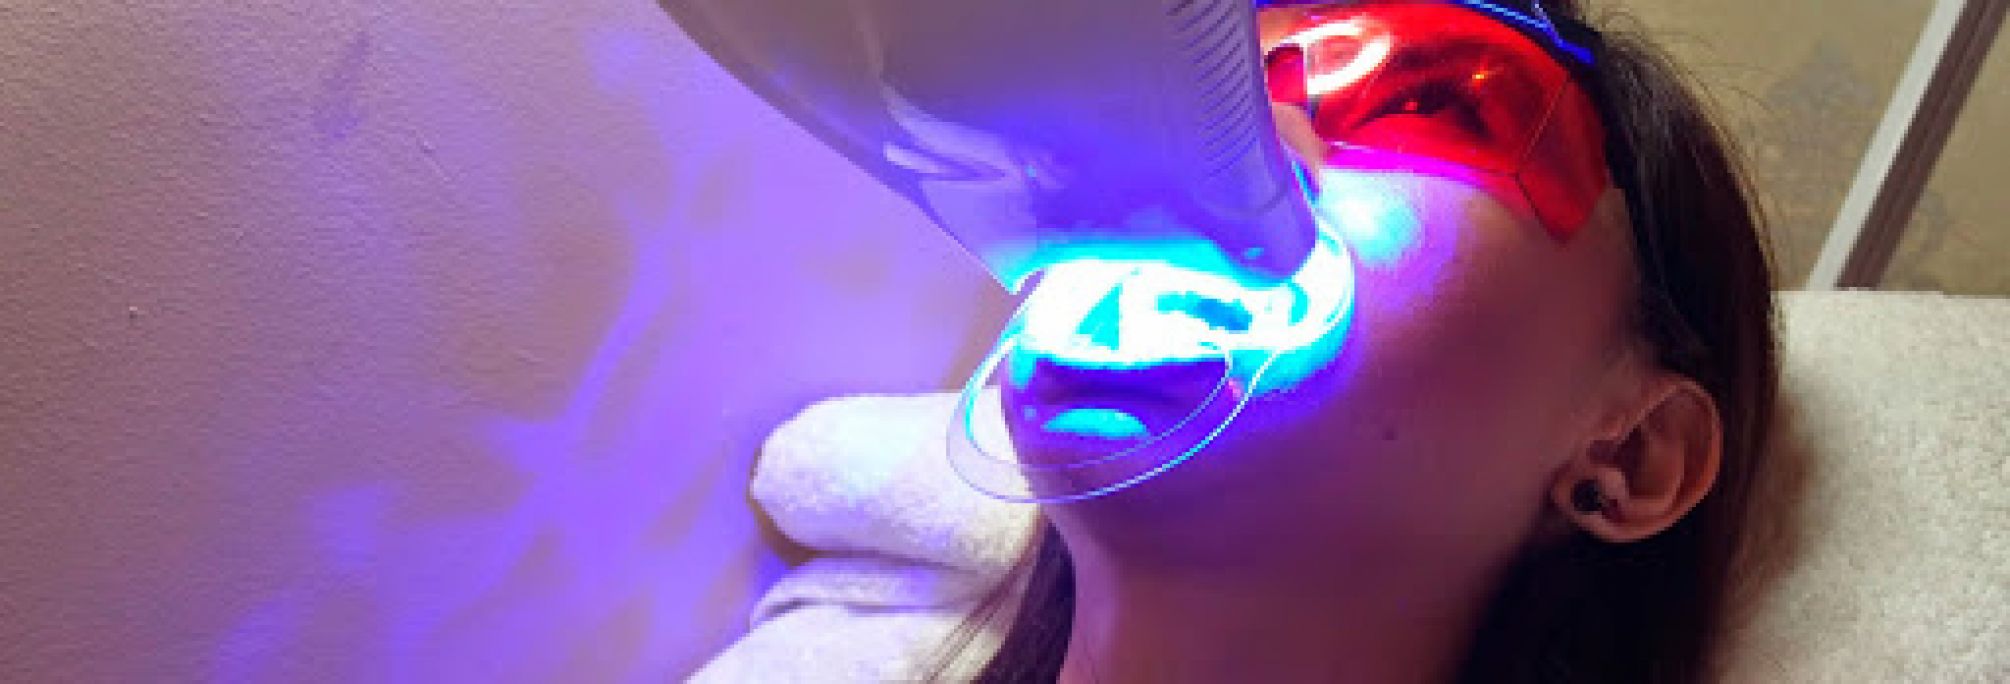 Blanchiment dentaire Pro à Cuise-la-Motte (60) Par Vanessa - Estheca